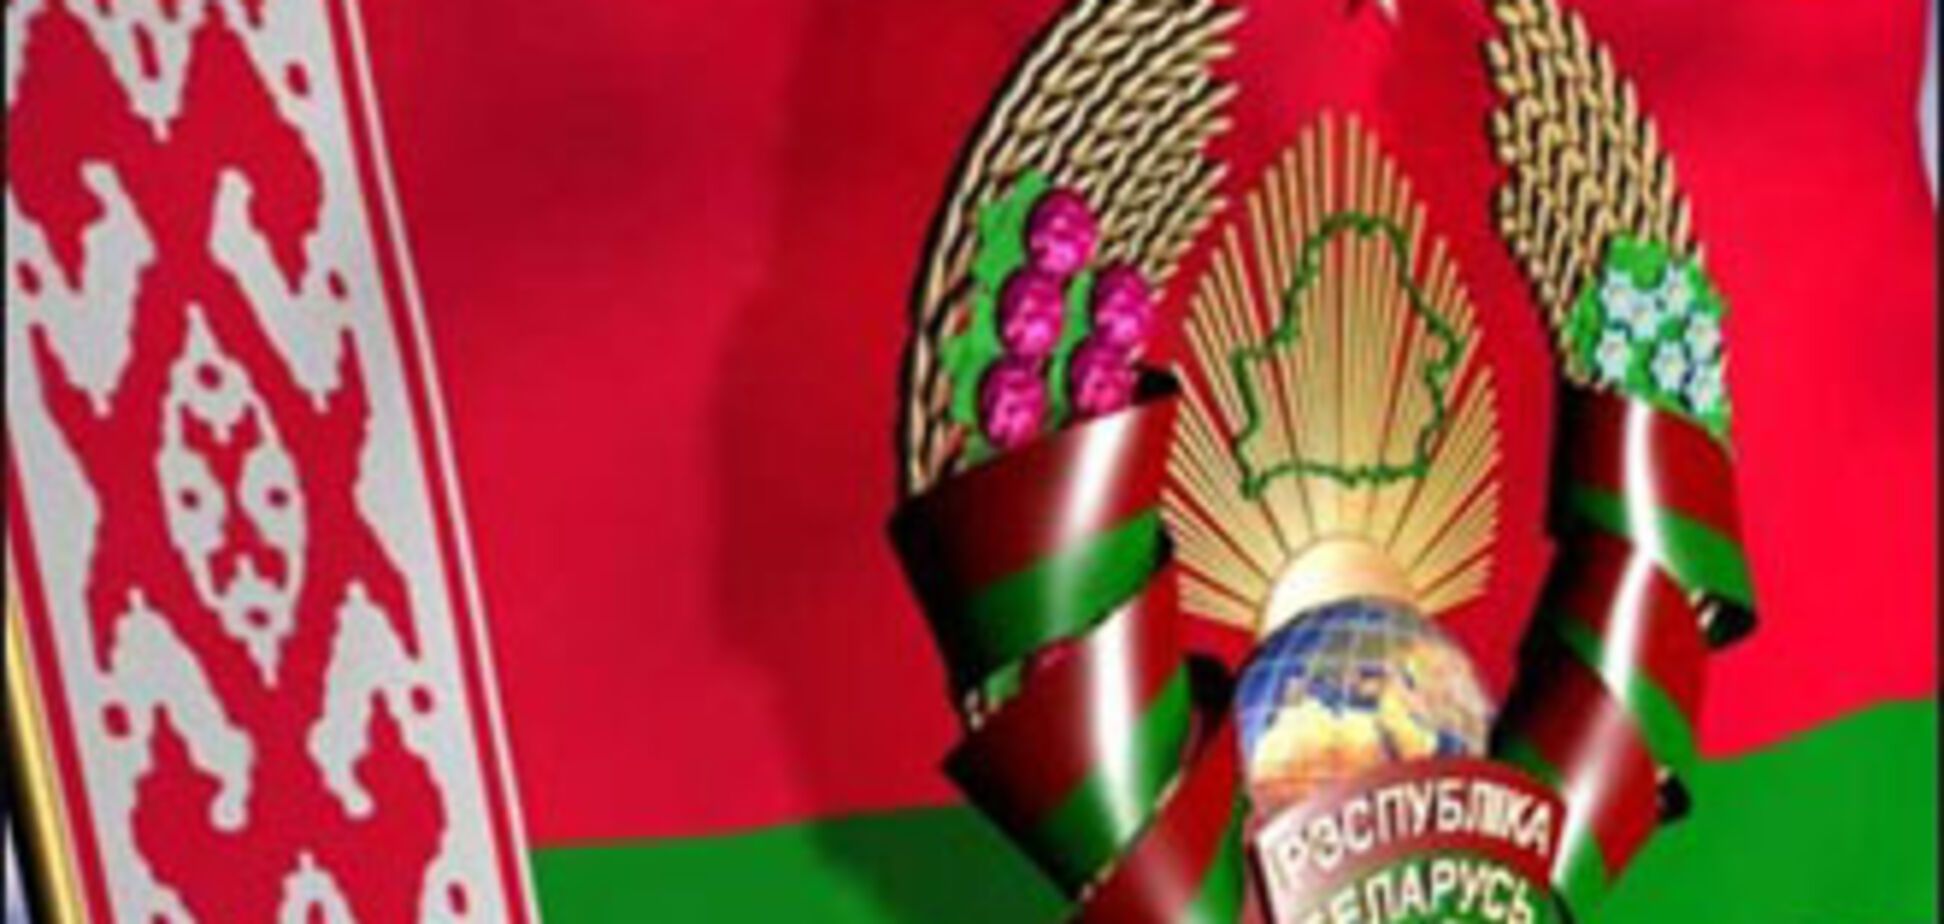 Беларуский парламент тайно ратифицировал Таможенный кодекс 